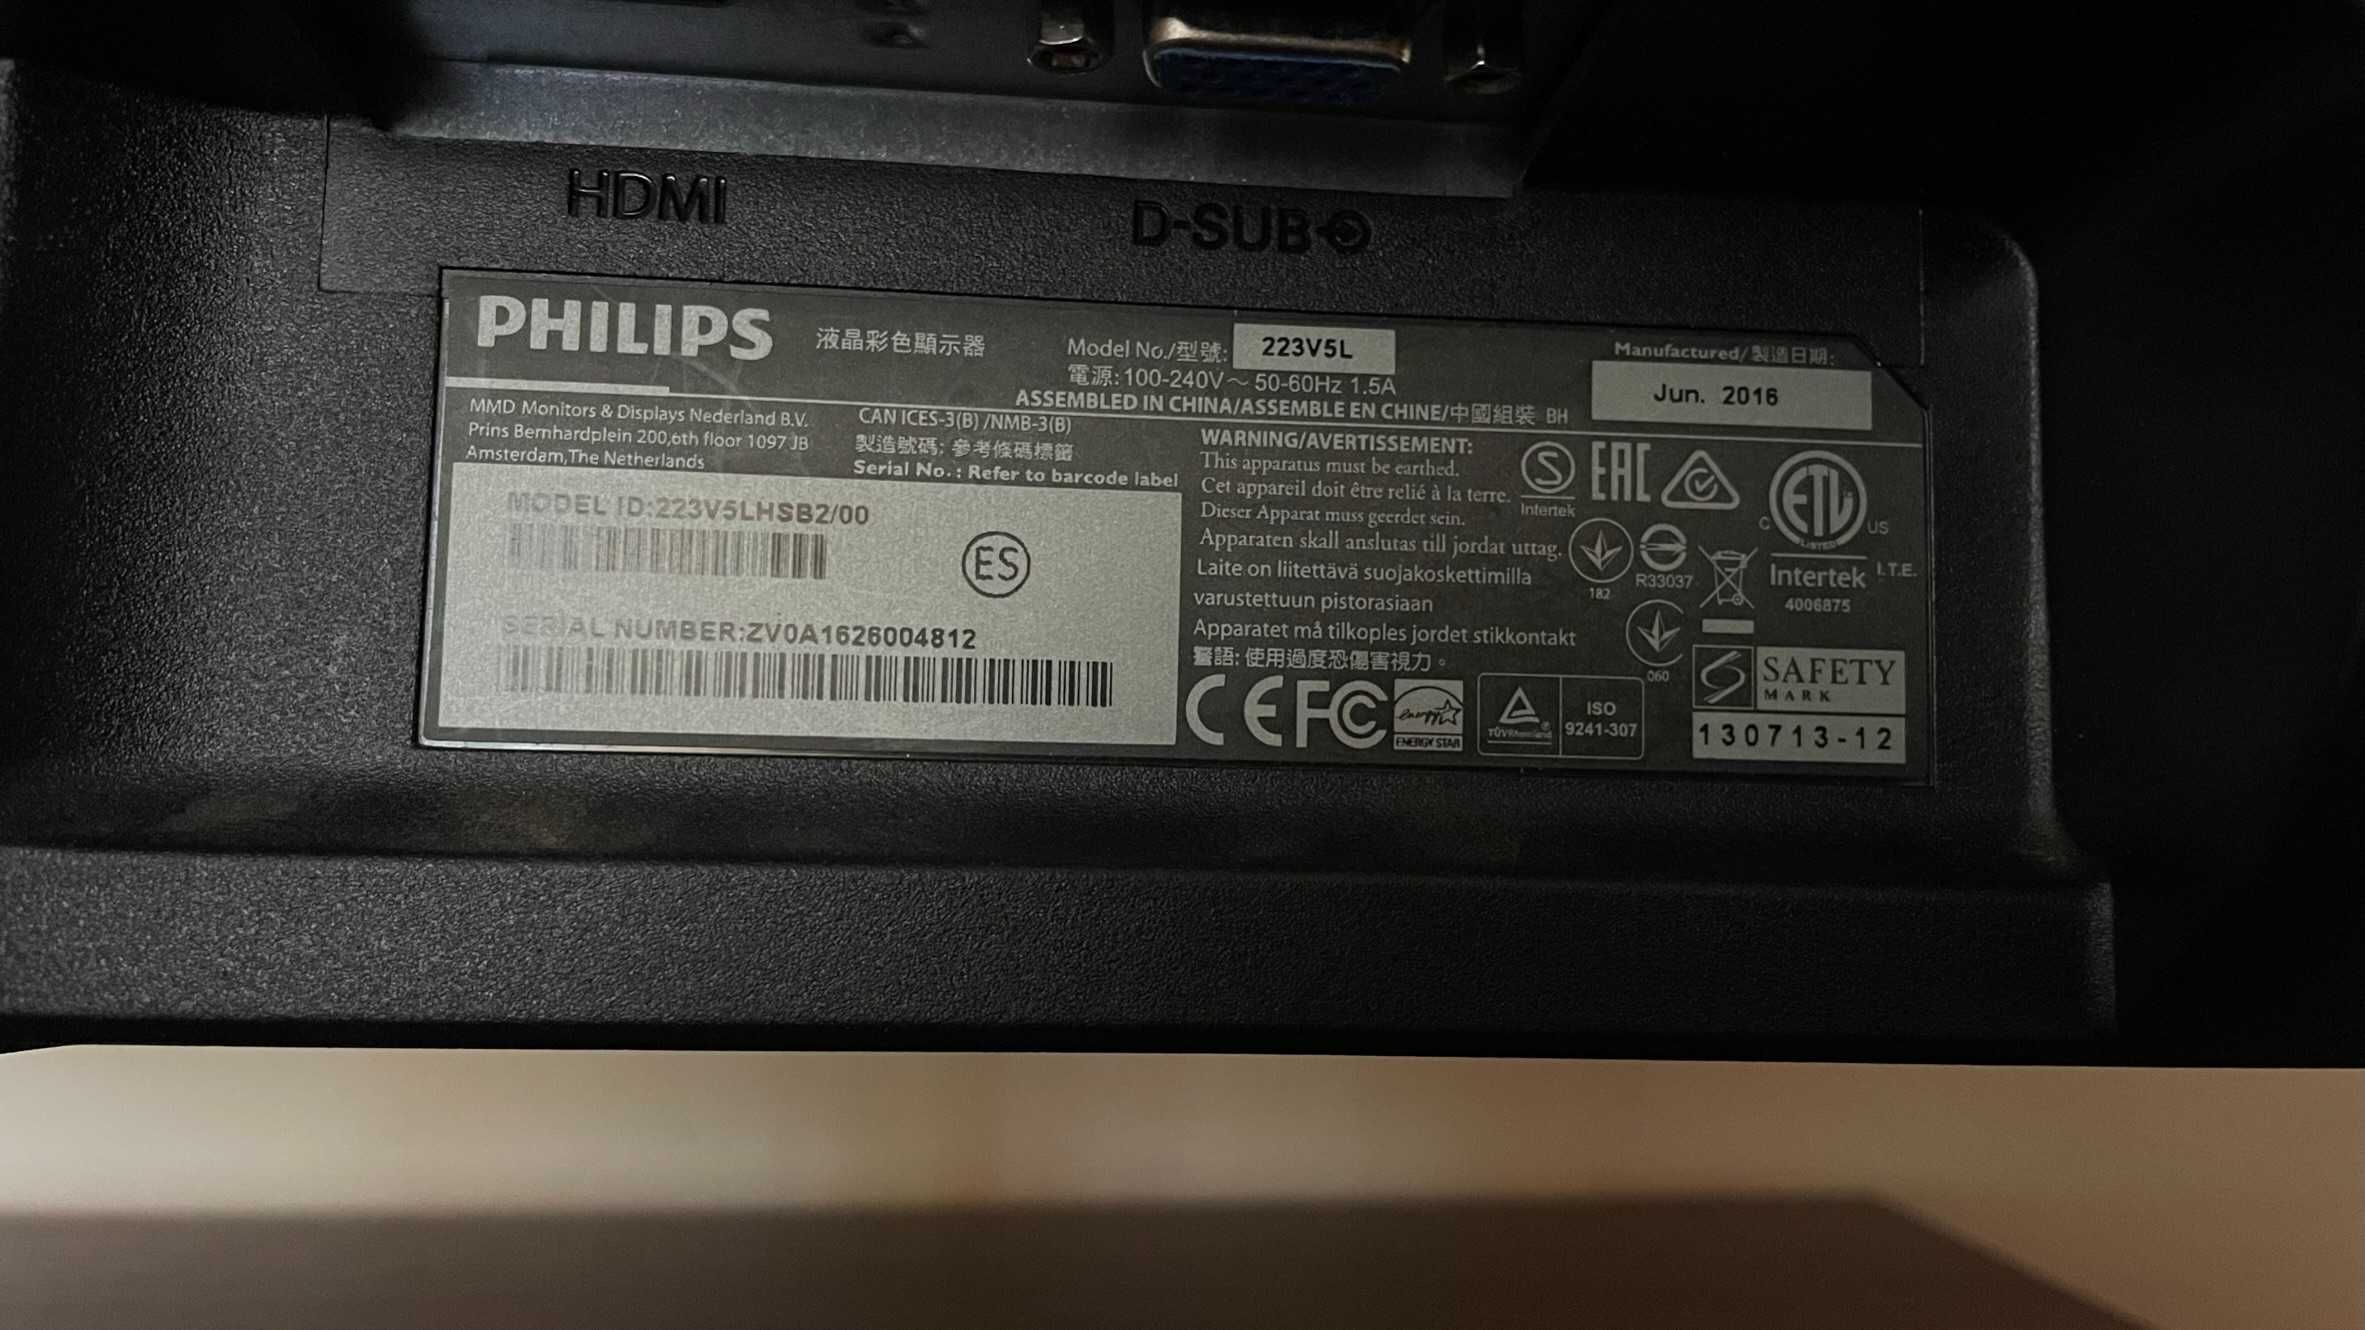 Monitor LCD Philips 21,5" - model 223VL5HSB2/00